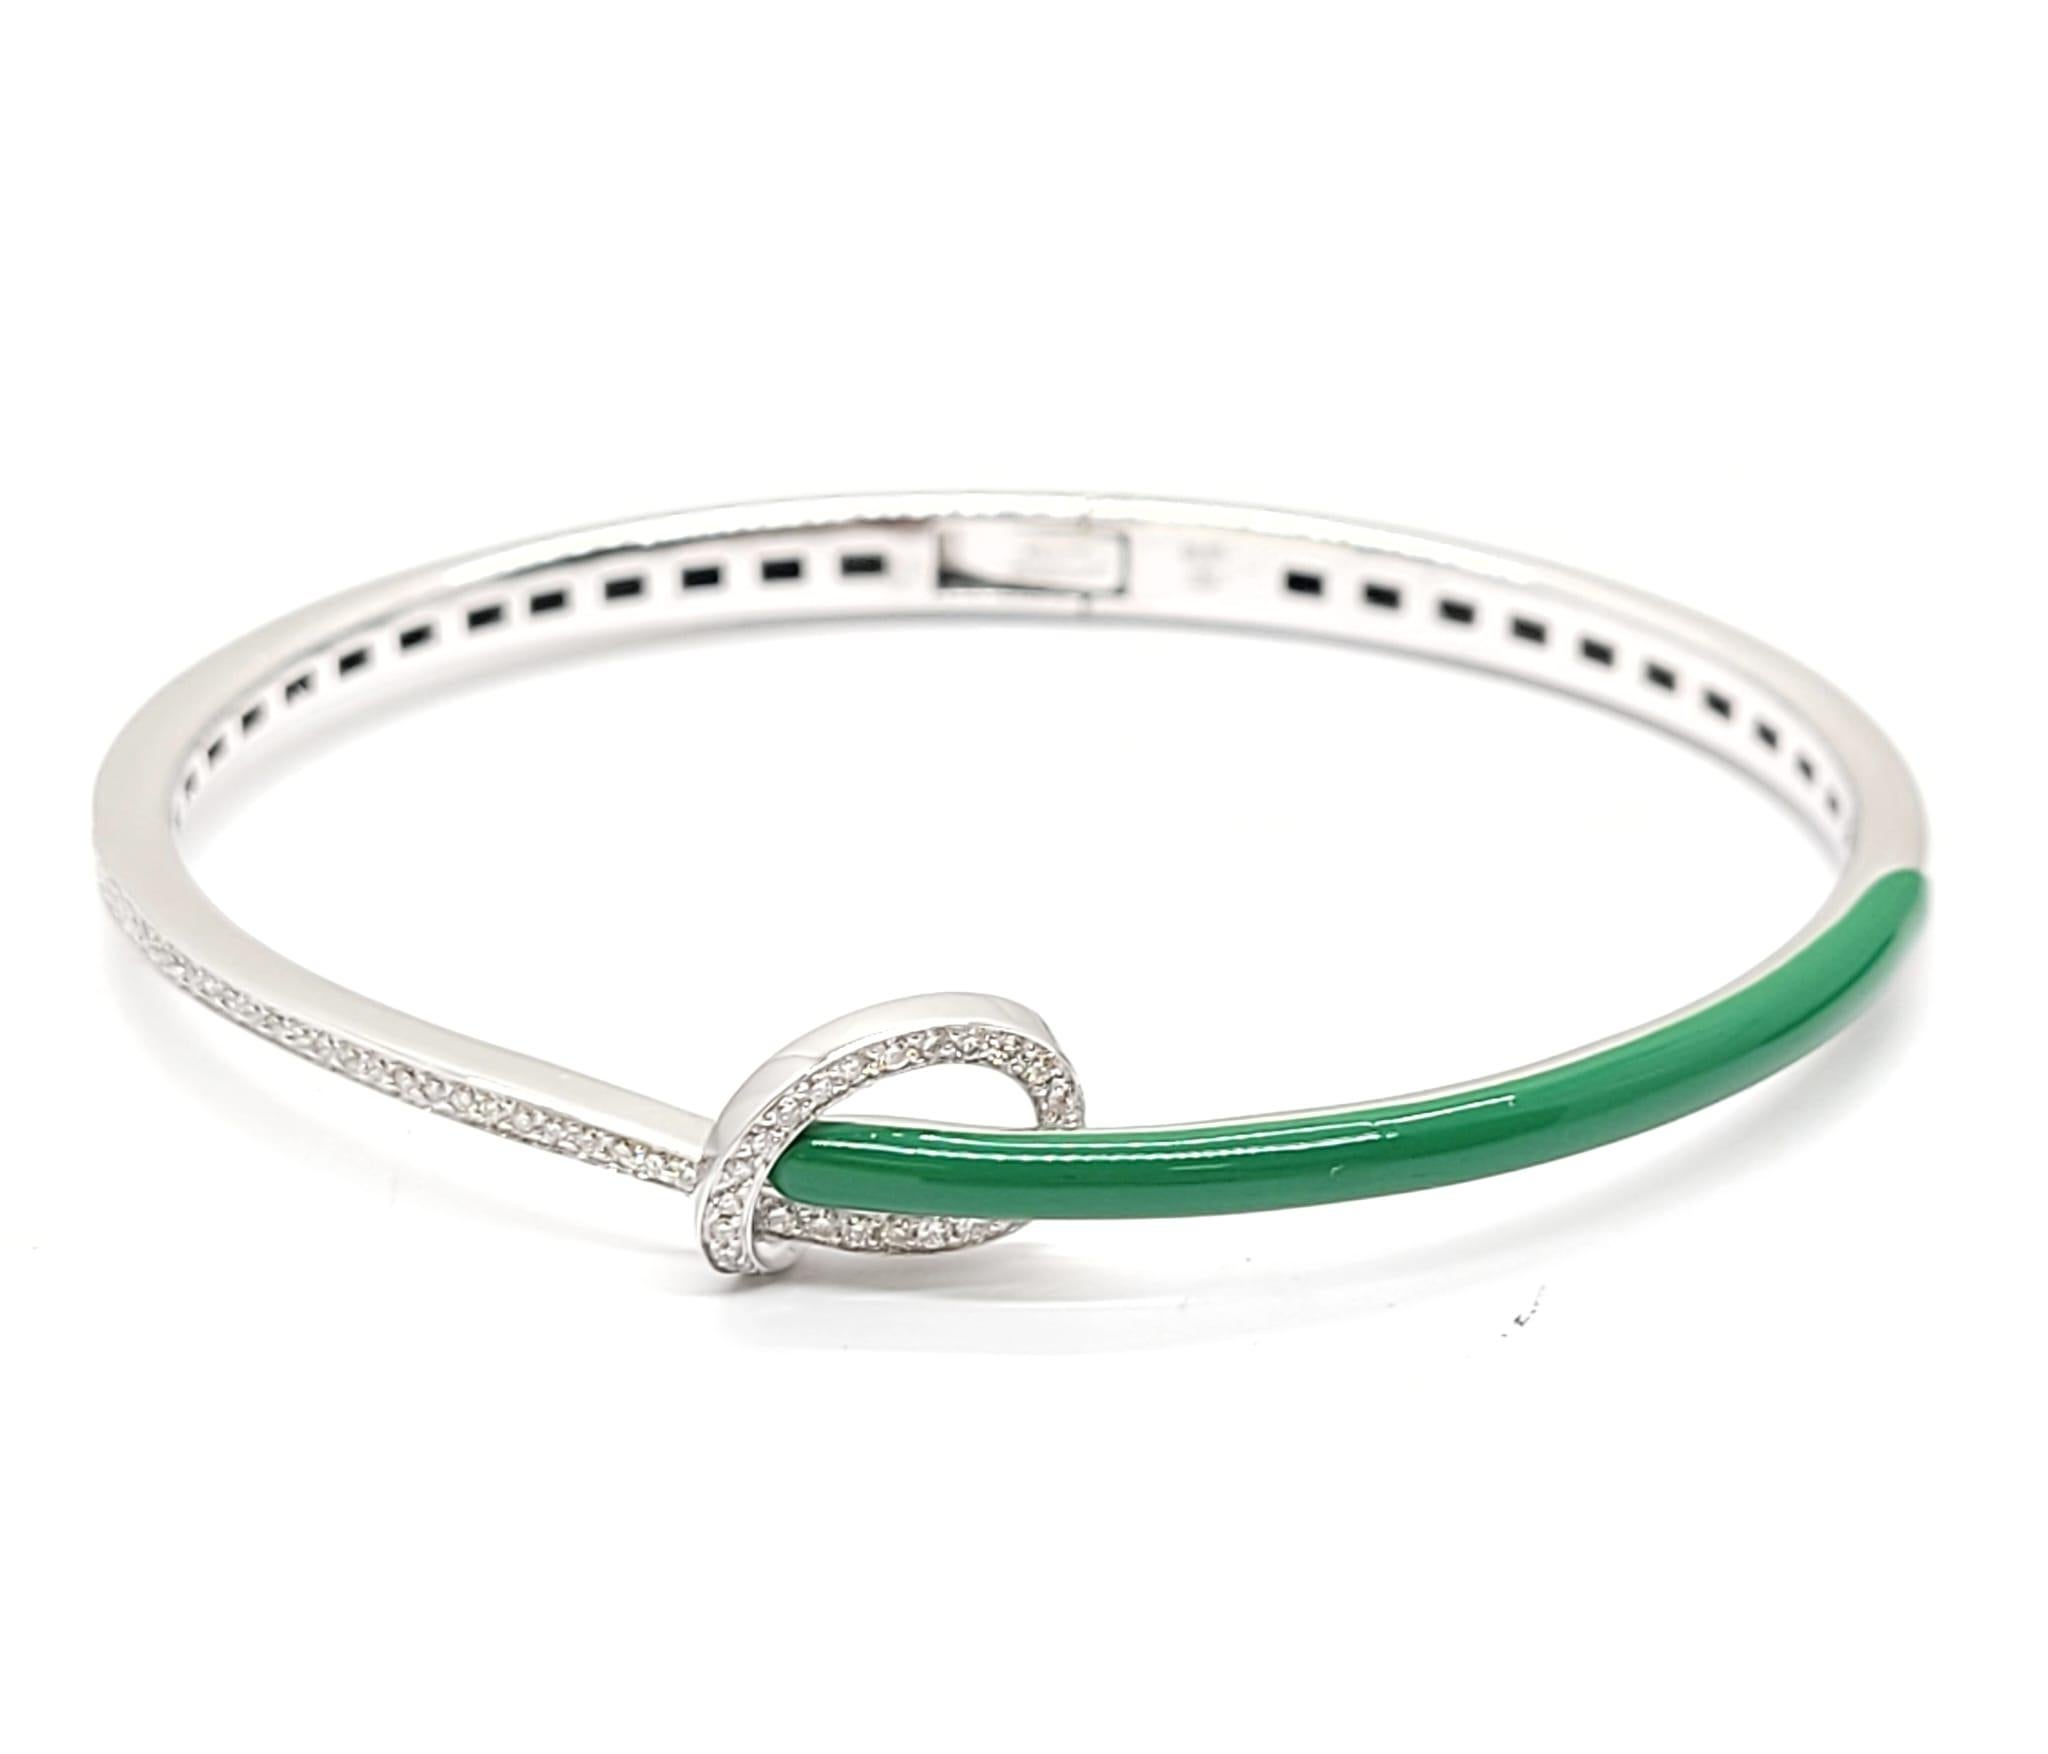 Andreoli - Bracelet en or blanc 18 carats avec émail vert et diamants

Ce bracelet présente les caractéristiques suivantes
- Diamant de 0,29 carat
- Émail vert
- 14,75 grammes d'or blanc 18K
- Fabriqué en Italie